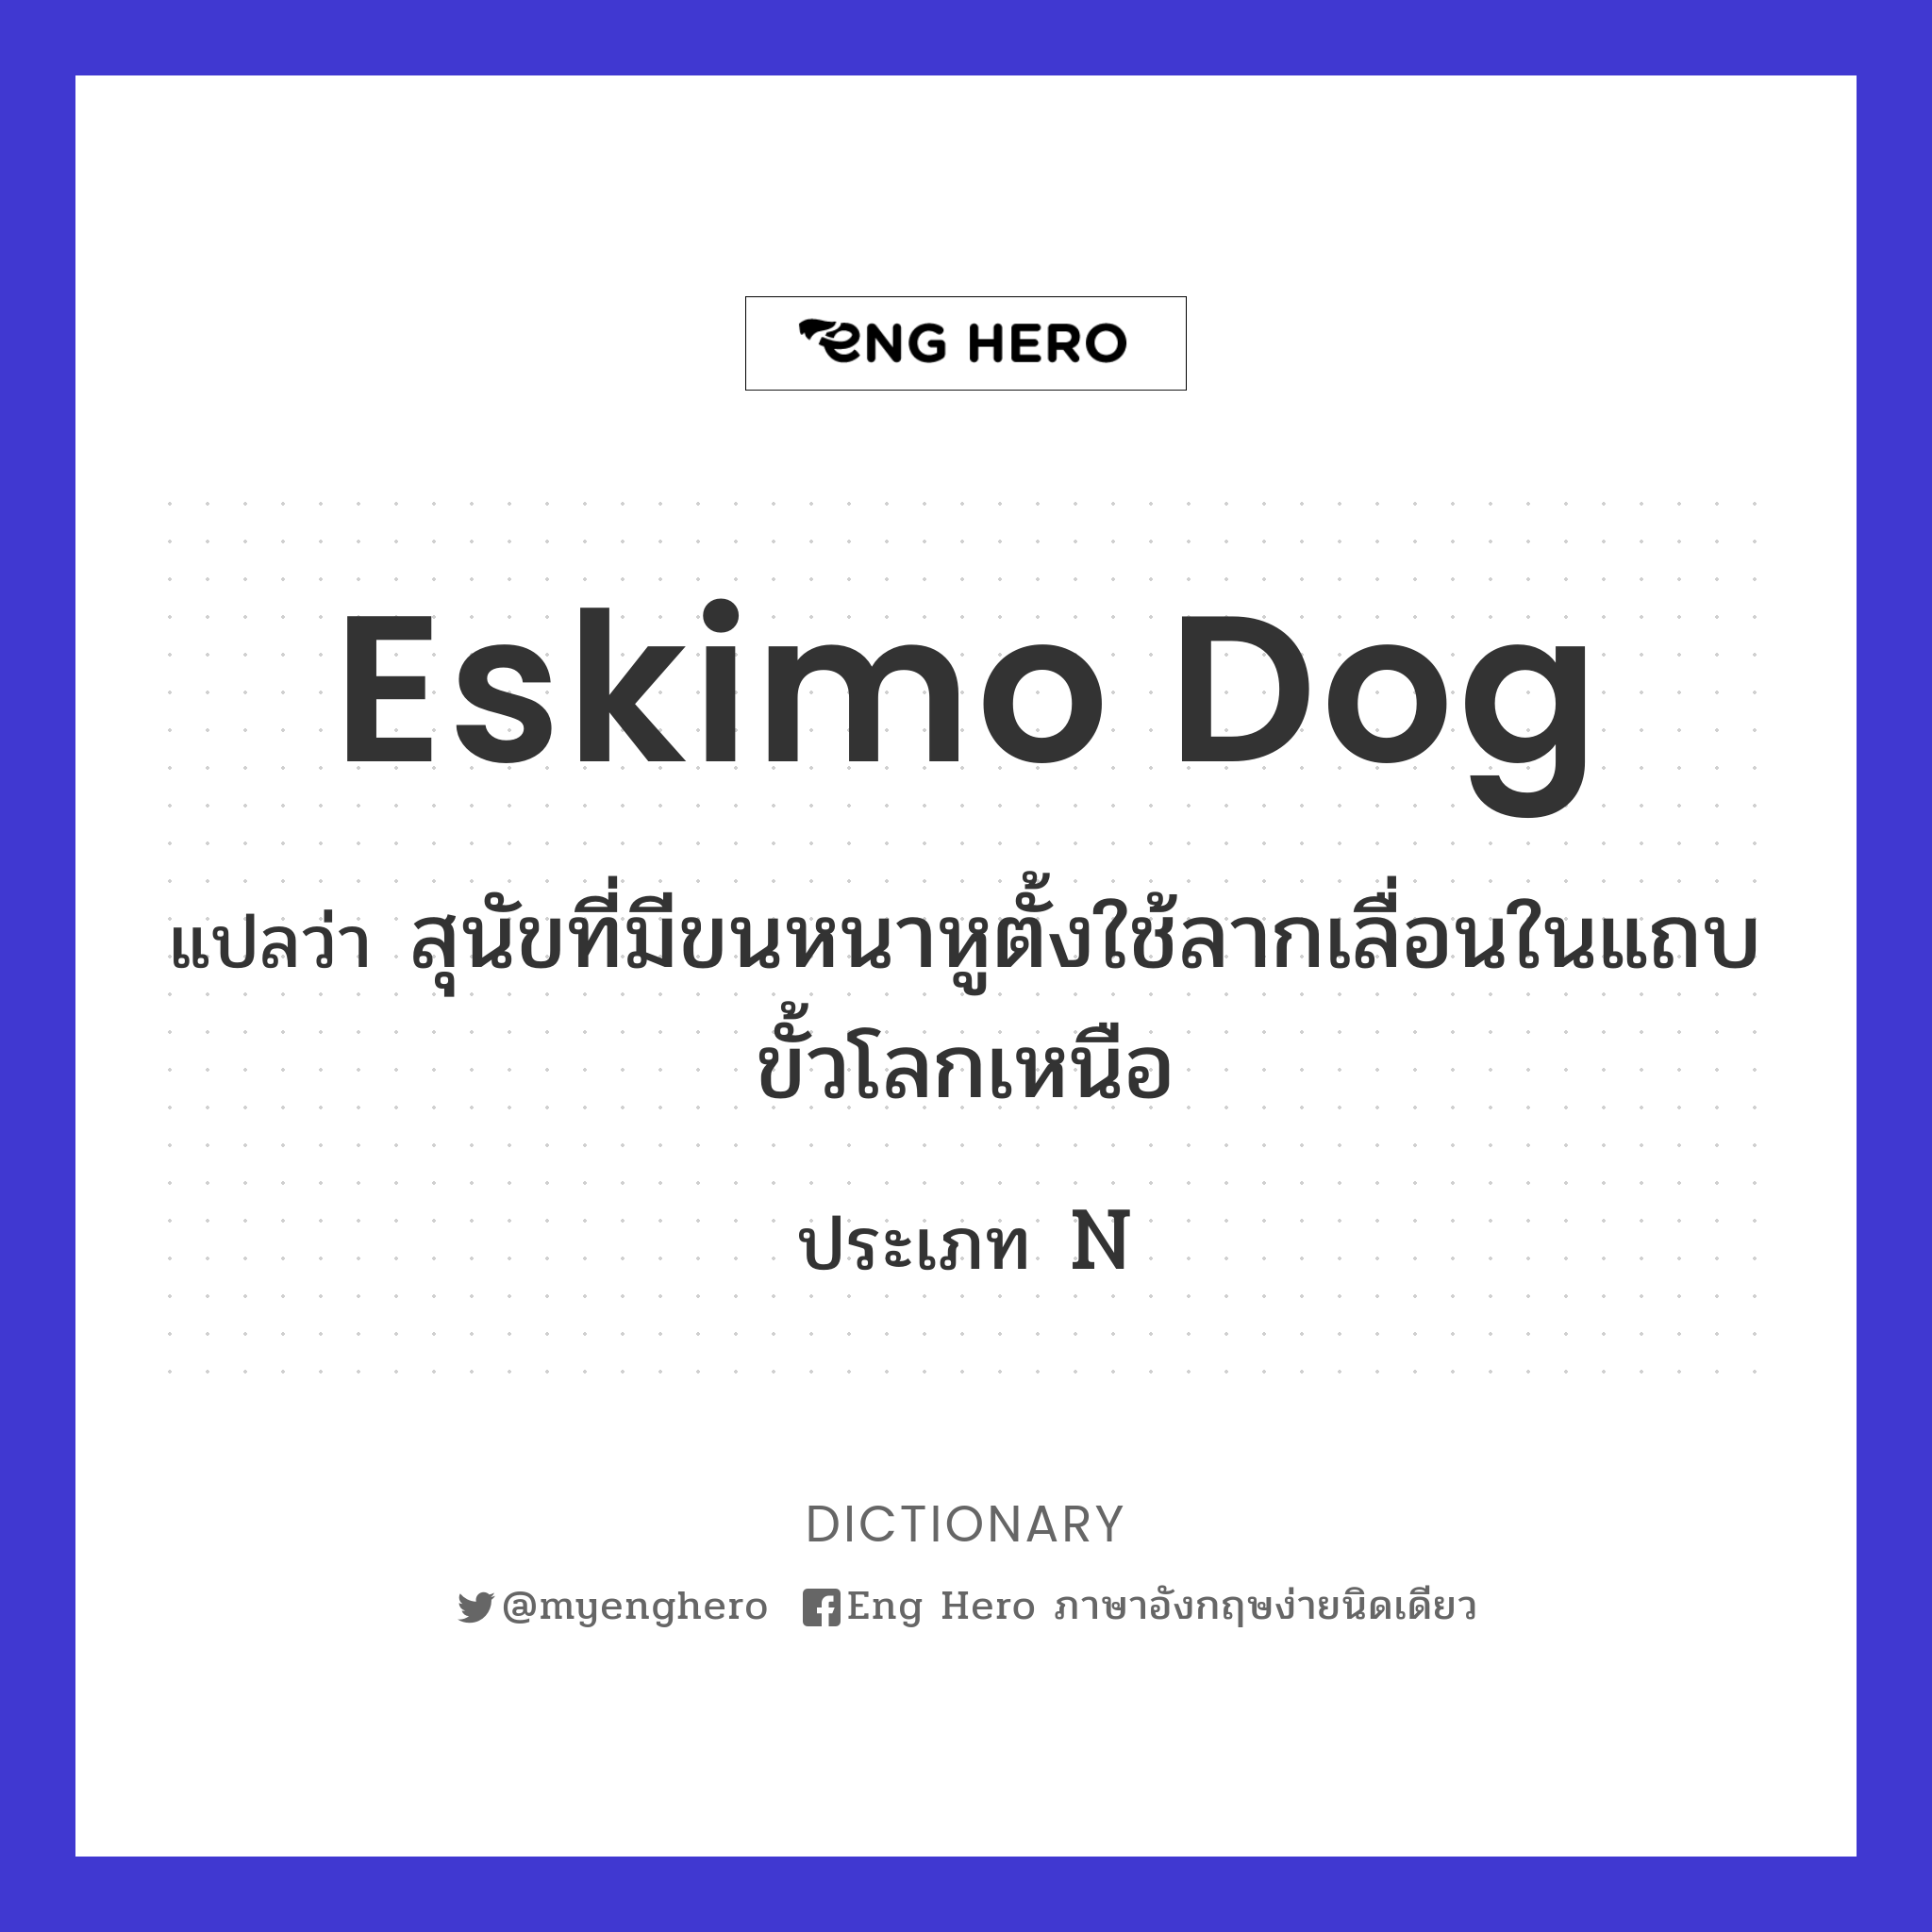 Eskimo dog